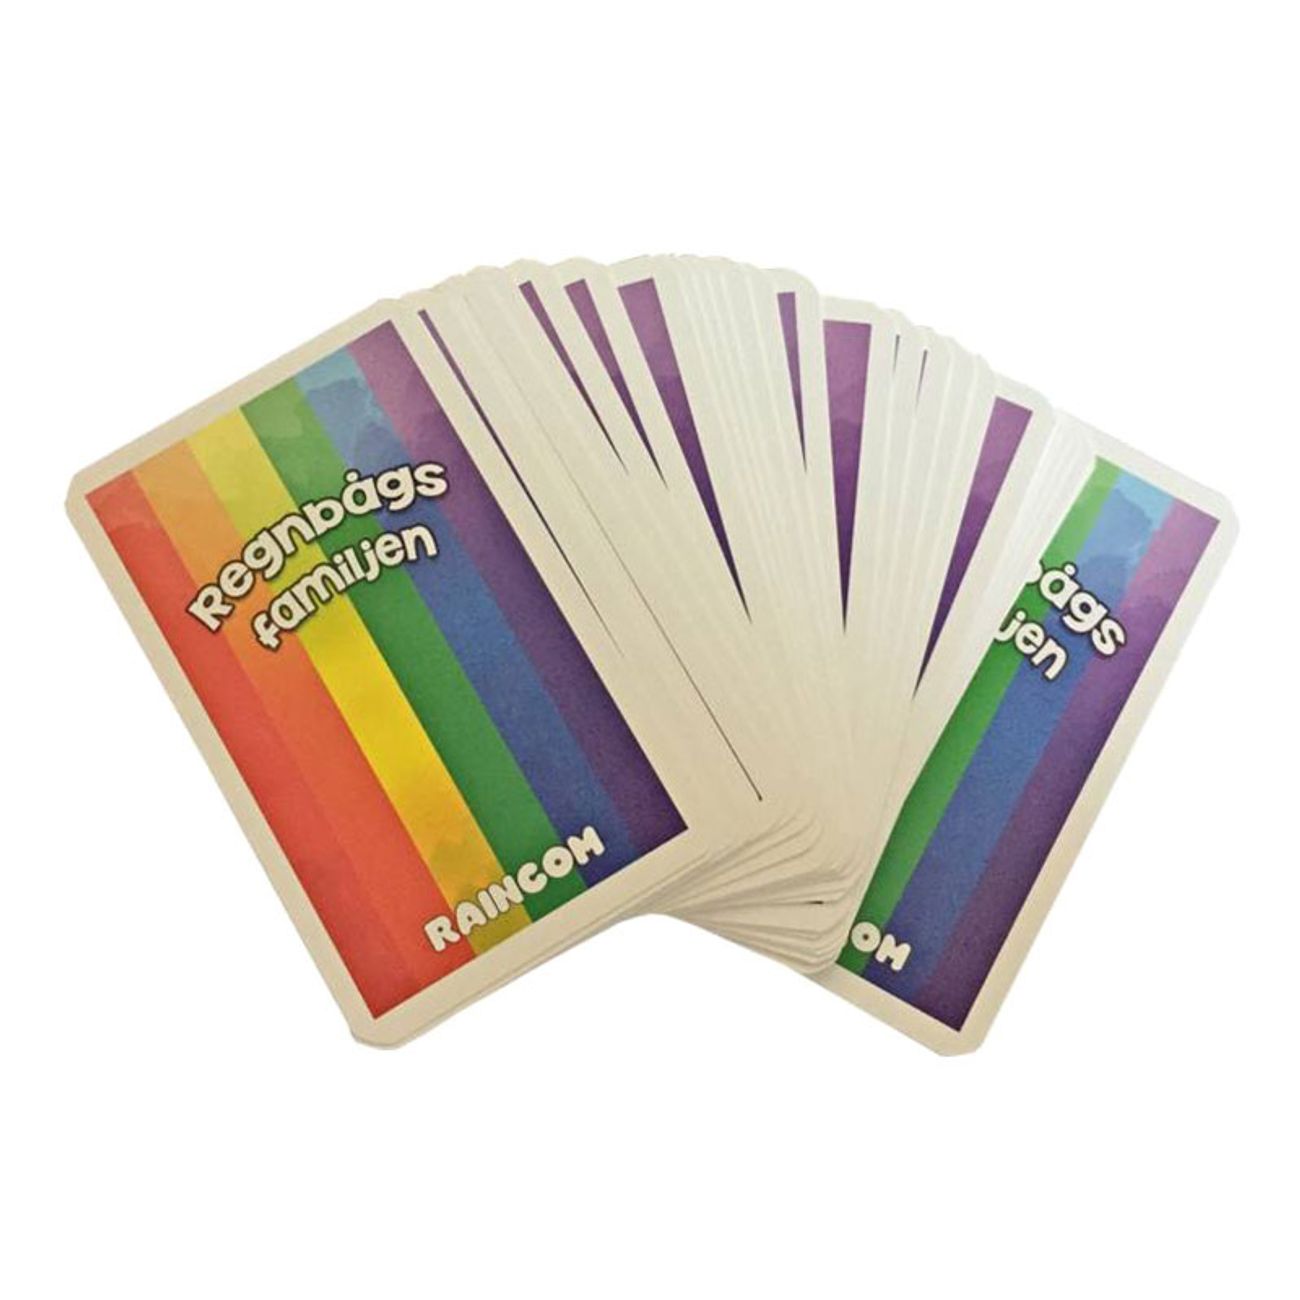 regnbagsfamiljen-kortspel-1